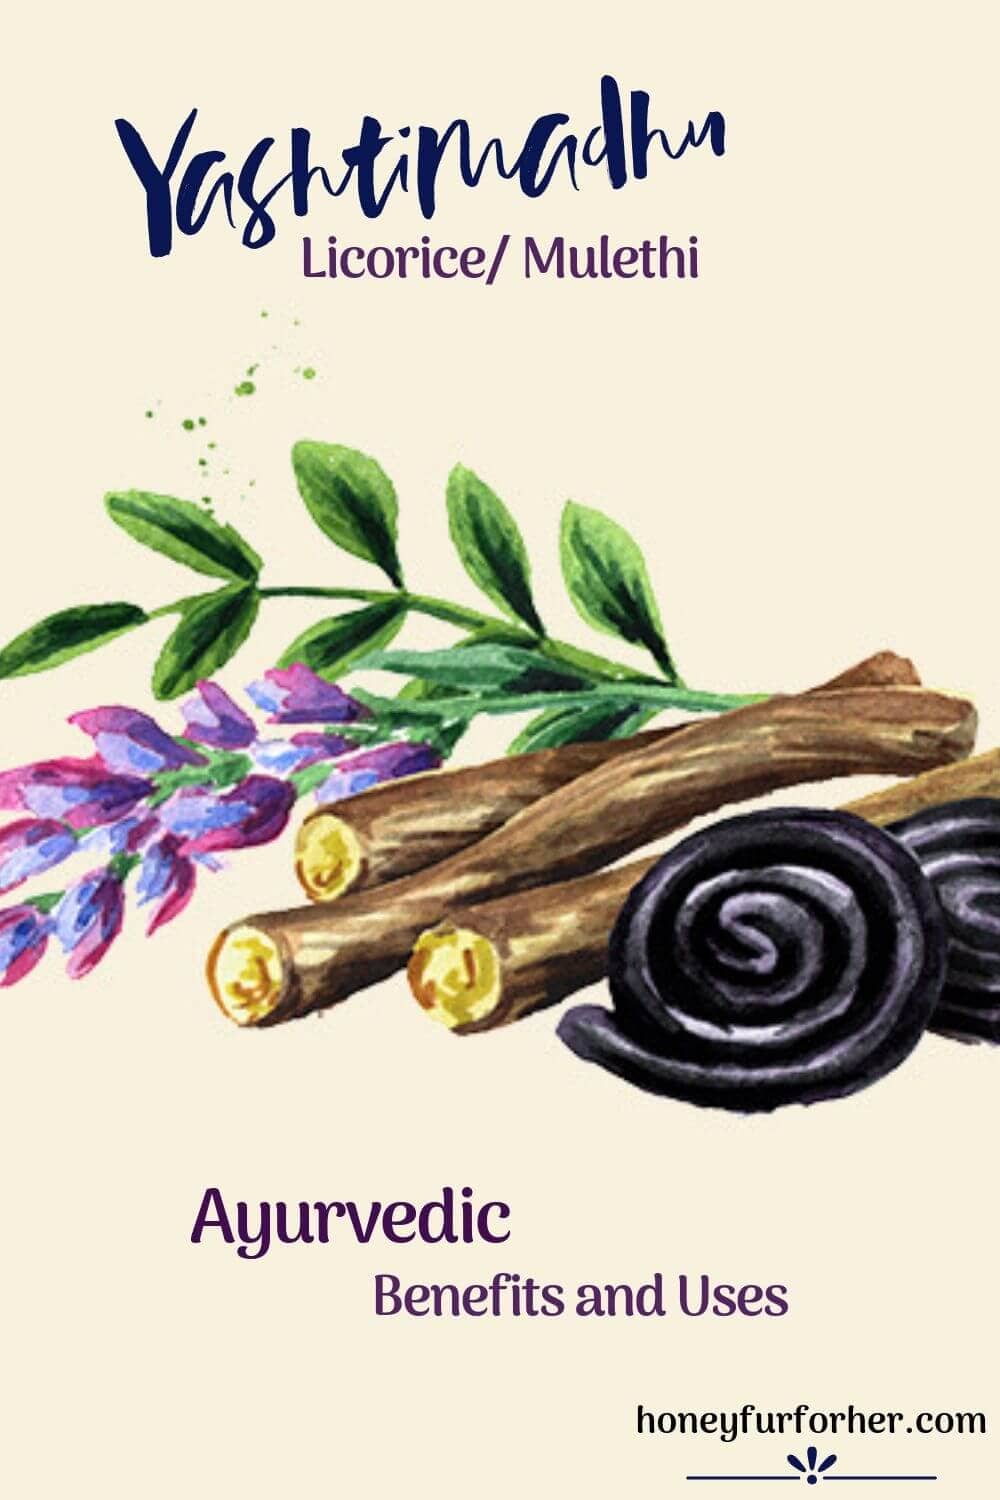 Yashtimadhu Licorice Mulethi Mulehati Plant Pinterest Image